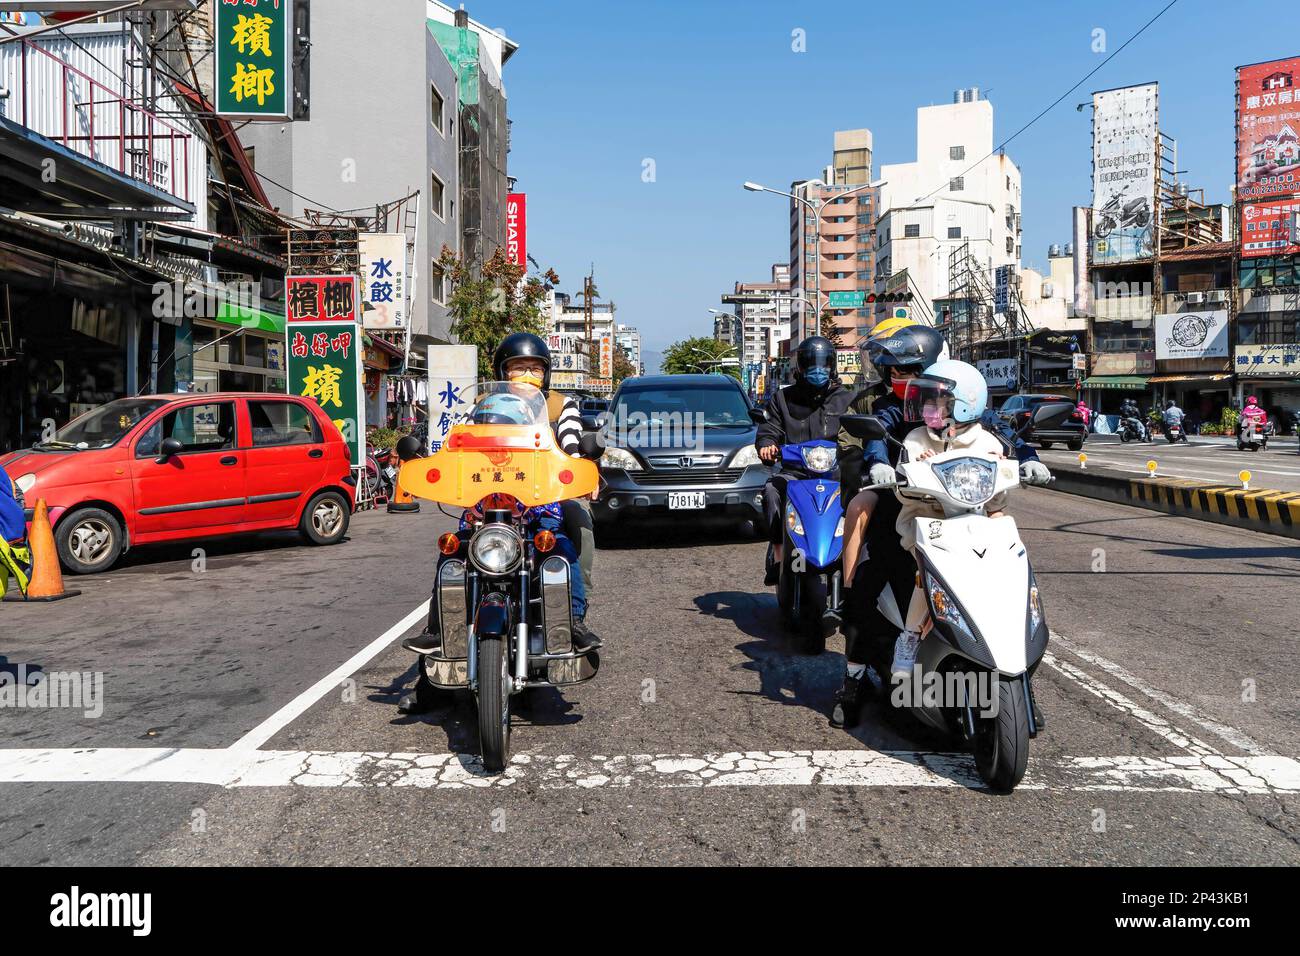 Motorradfahrer unterhalten sich, während sie an einer Kreuzung in Taichung in einem Bereich sitzen, der für Fahrräder vorgesehen ist. Das tägliche Leben in Taichung, der zweitgrößten Stadt Taiwans. Um mehr internationale Touristen anzulocken, kündigte die taiwanesische Regierung kürzlich an, dass sie 5000 Taiwan-Dollar (ca. 165 USD) als Teil eines Konjunkturpakets zur Unterstützung der Reisesubventionierung für Touristen bereitstellen werde. Stockfoto